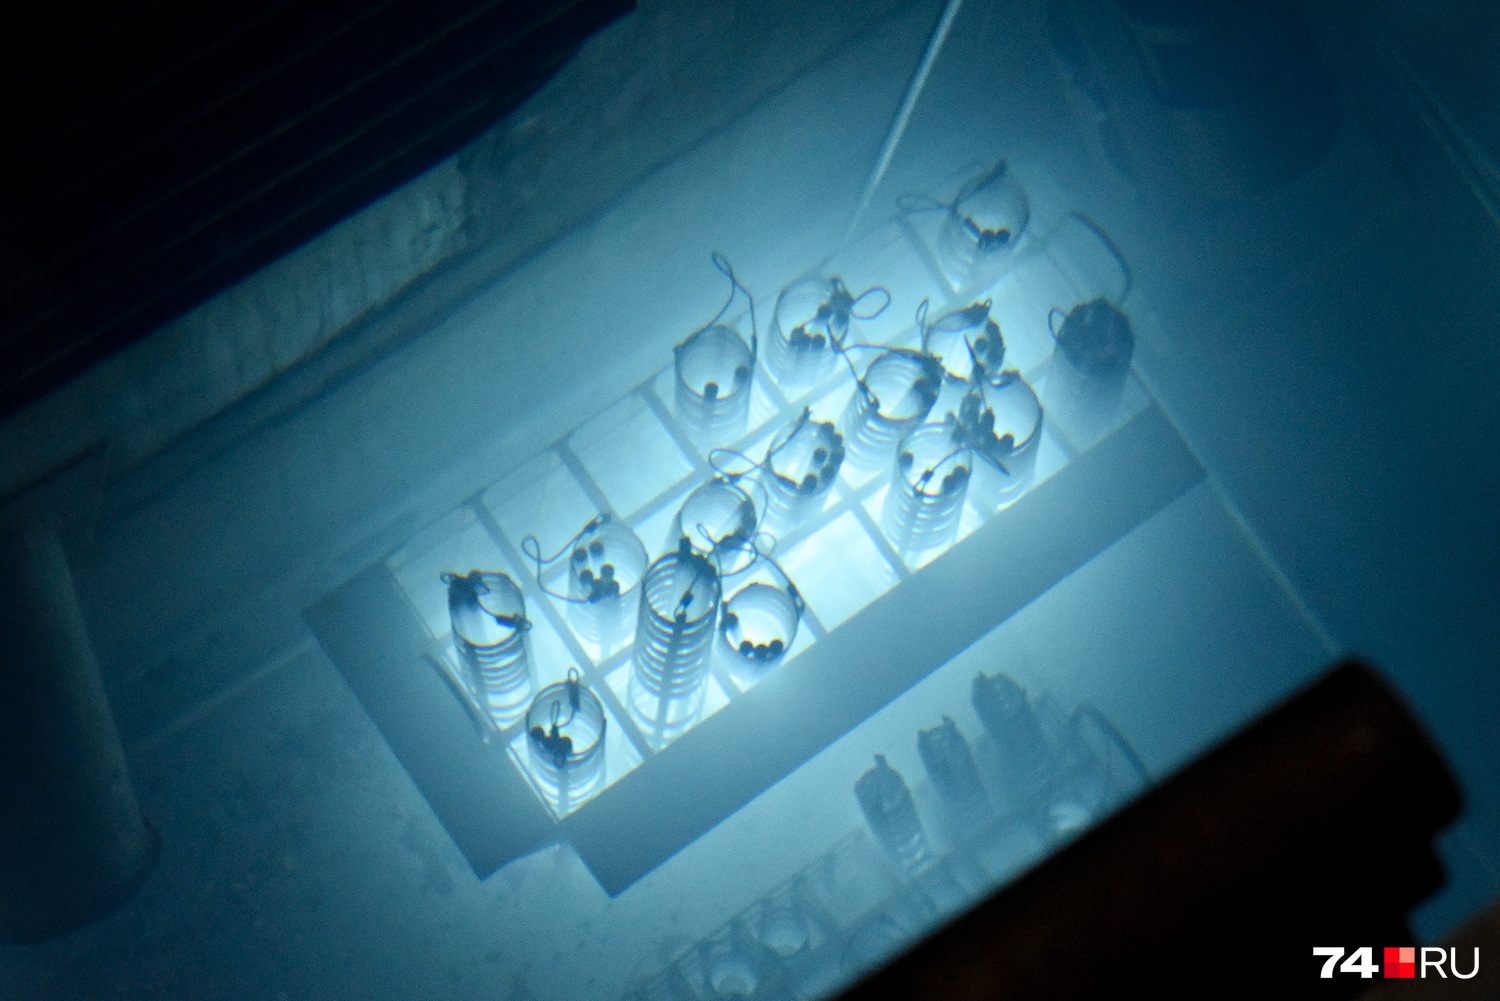 Этот снимок сделан в полной темноте: вода светится из-за нахождения в ней крайне радиоактивных прутков (они стоят вертикально в сетках). По сути, это склад продукции, а вода выполняет роль защиты